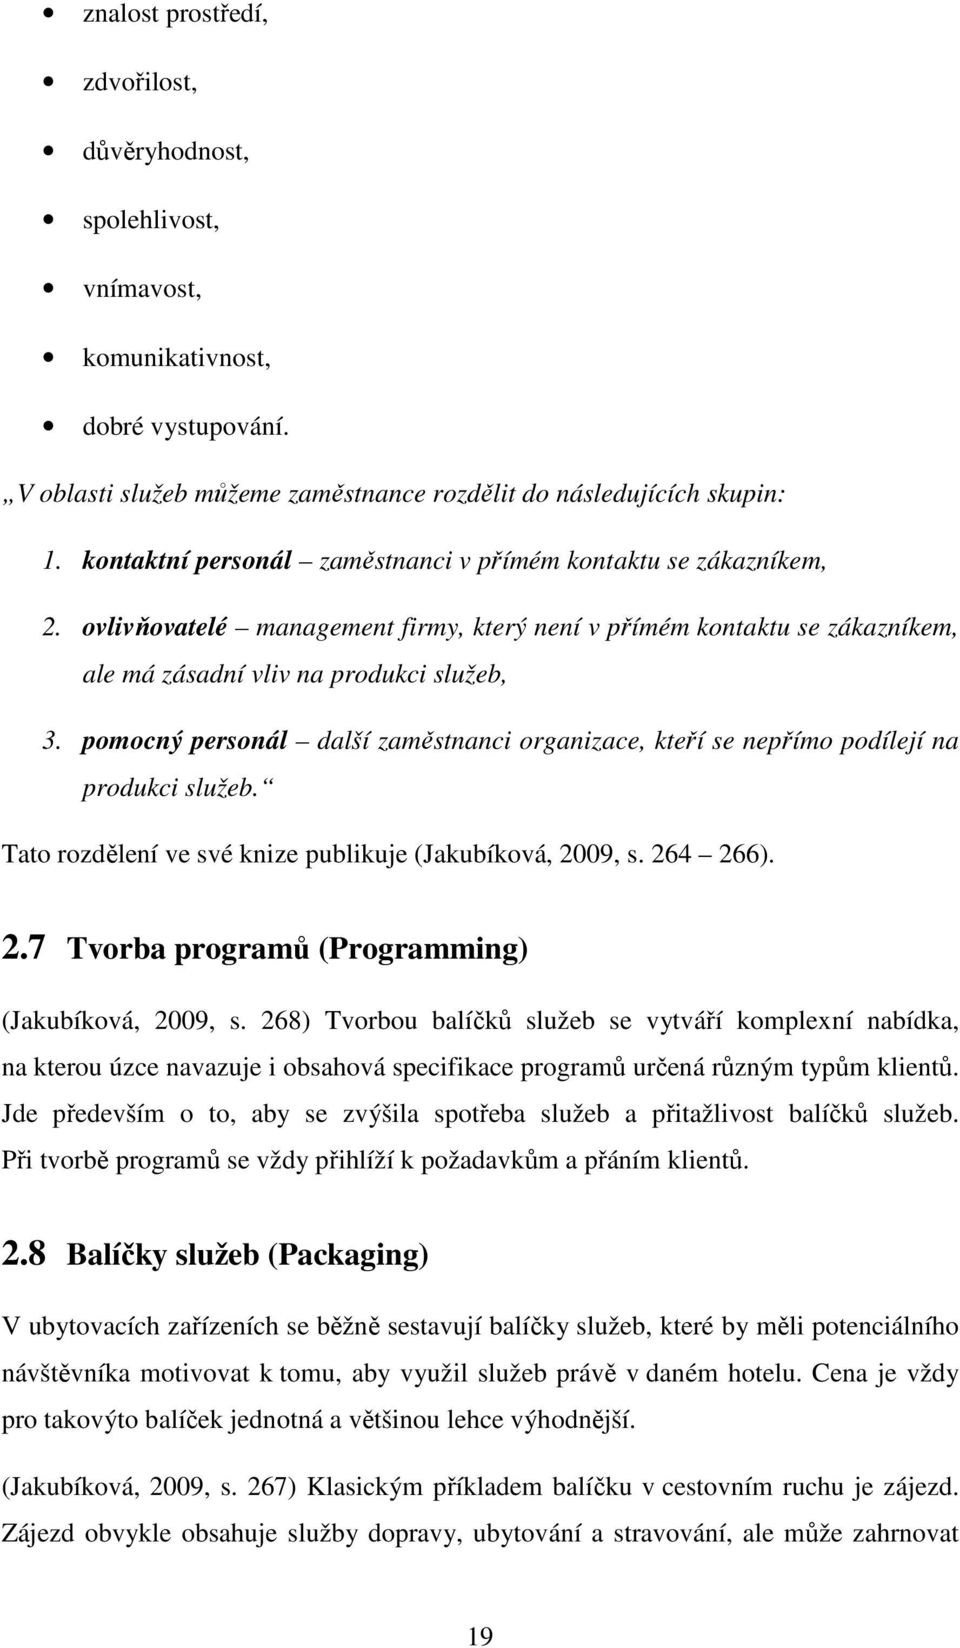 pomocný personál další zaměstnanci organizace, kteří se nepřímo podílejí na produkci služeb. Tato rozdělení ve své knize publikuje (Jakubíková, 2009, s. 264 266). 2.7 Tvorba programů (Programming) (Jakubíková, 2009, s.